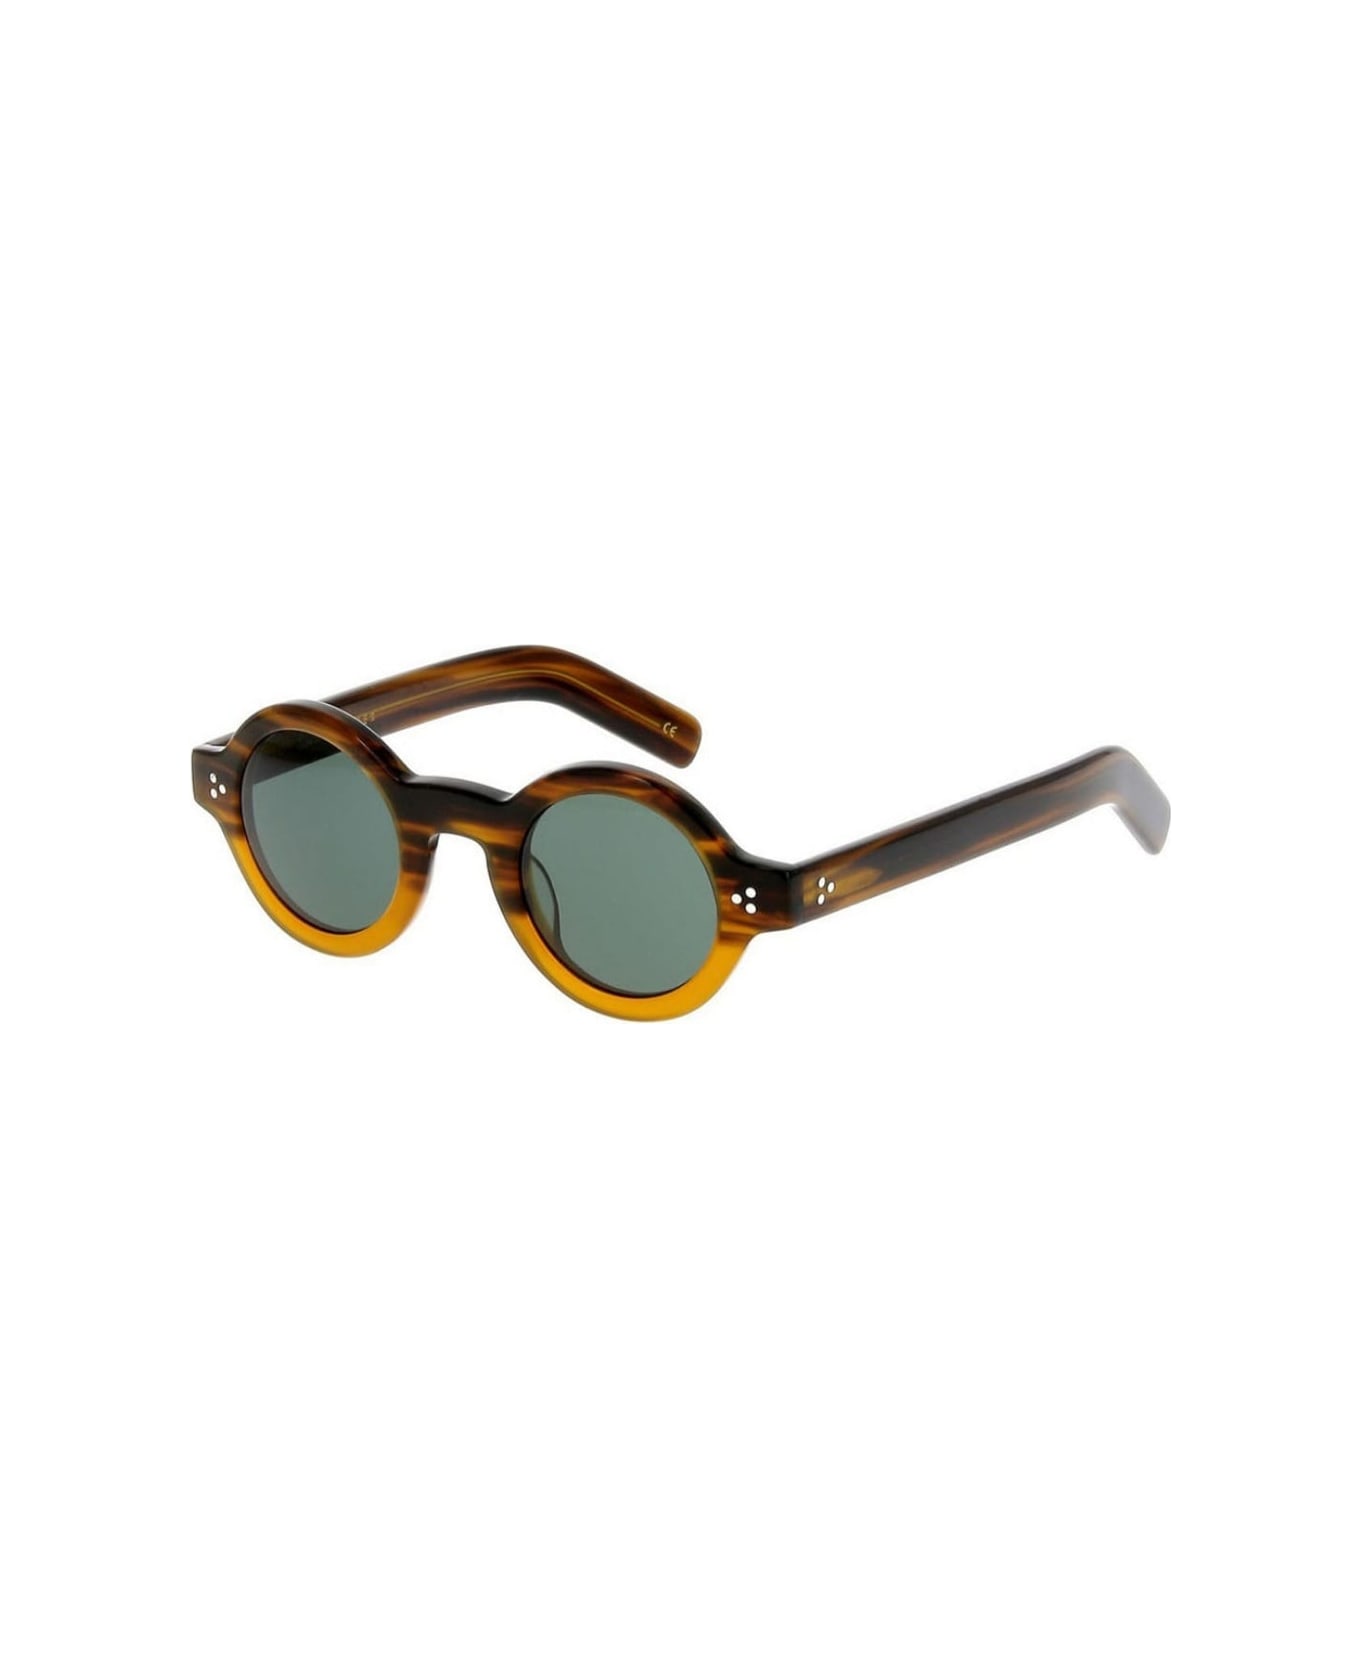 Lesca TABU 83 Sunglasses - Bicolor marrone e beige